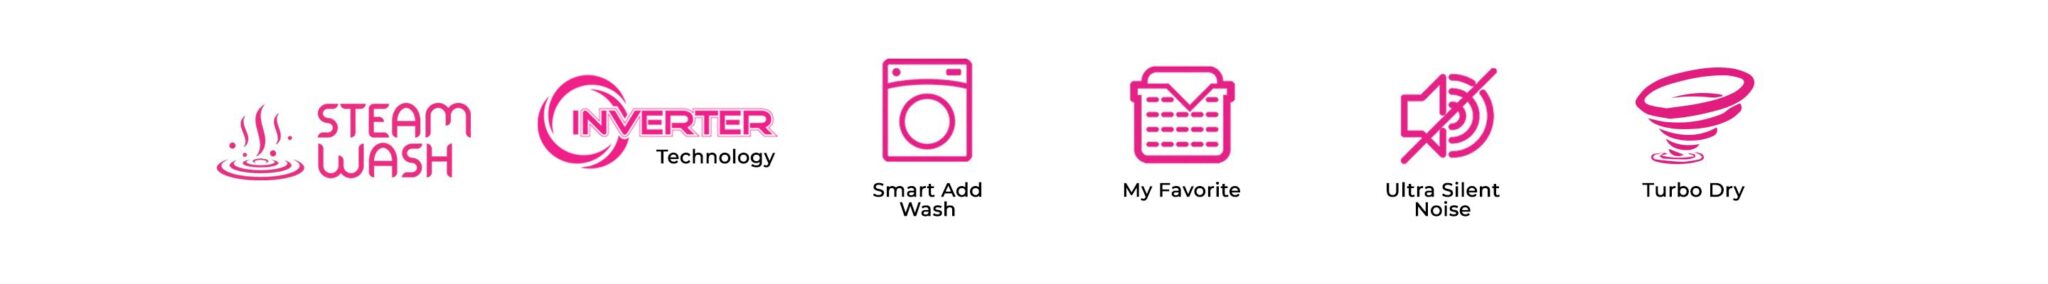 Fitur Fitur utama dari Mesin Cuci Wonder Wash dari Polytron yang hemat listrik seperti mesin cuci Laundry